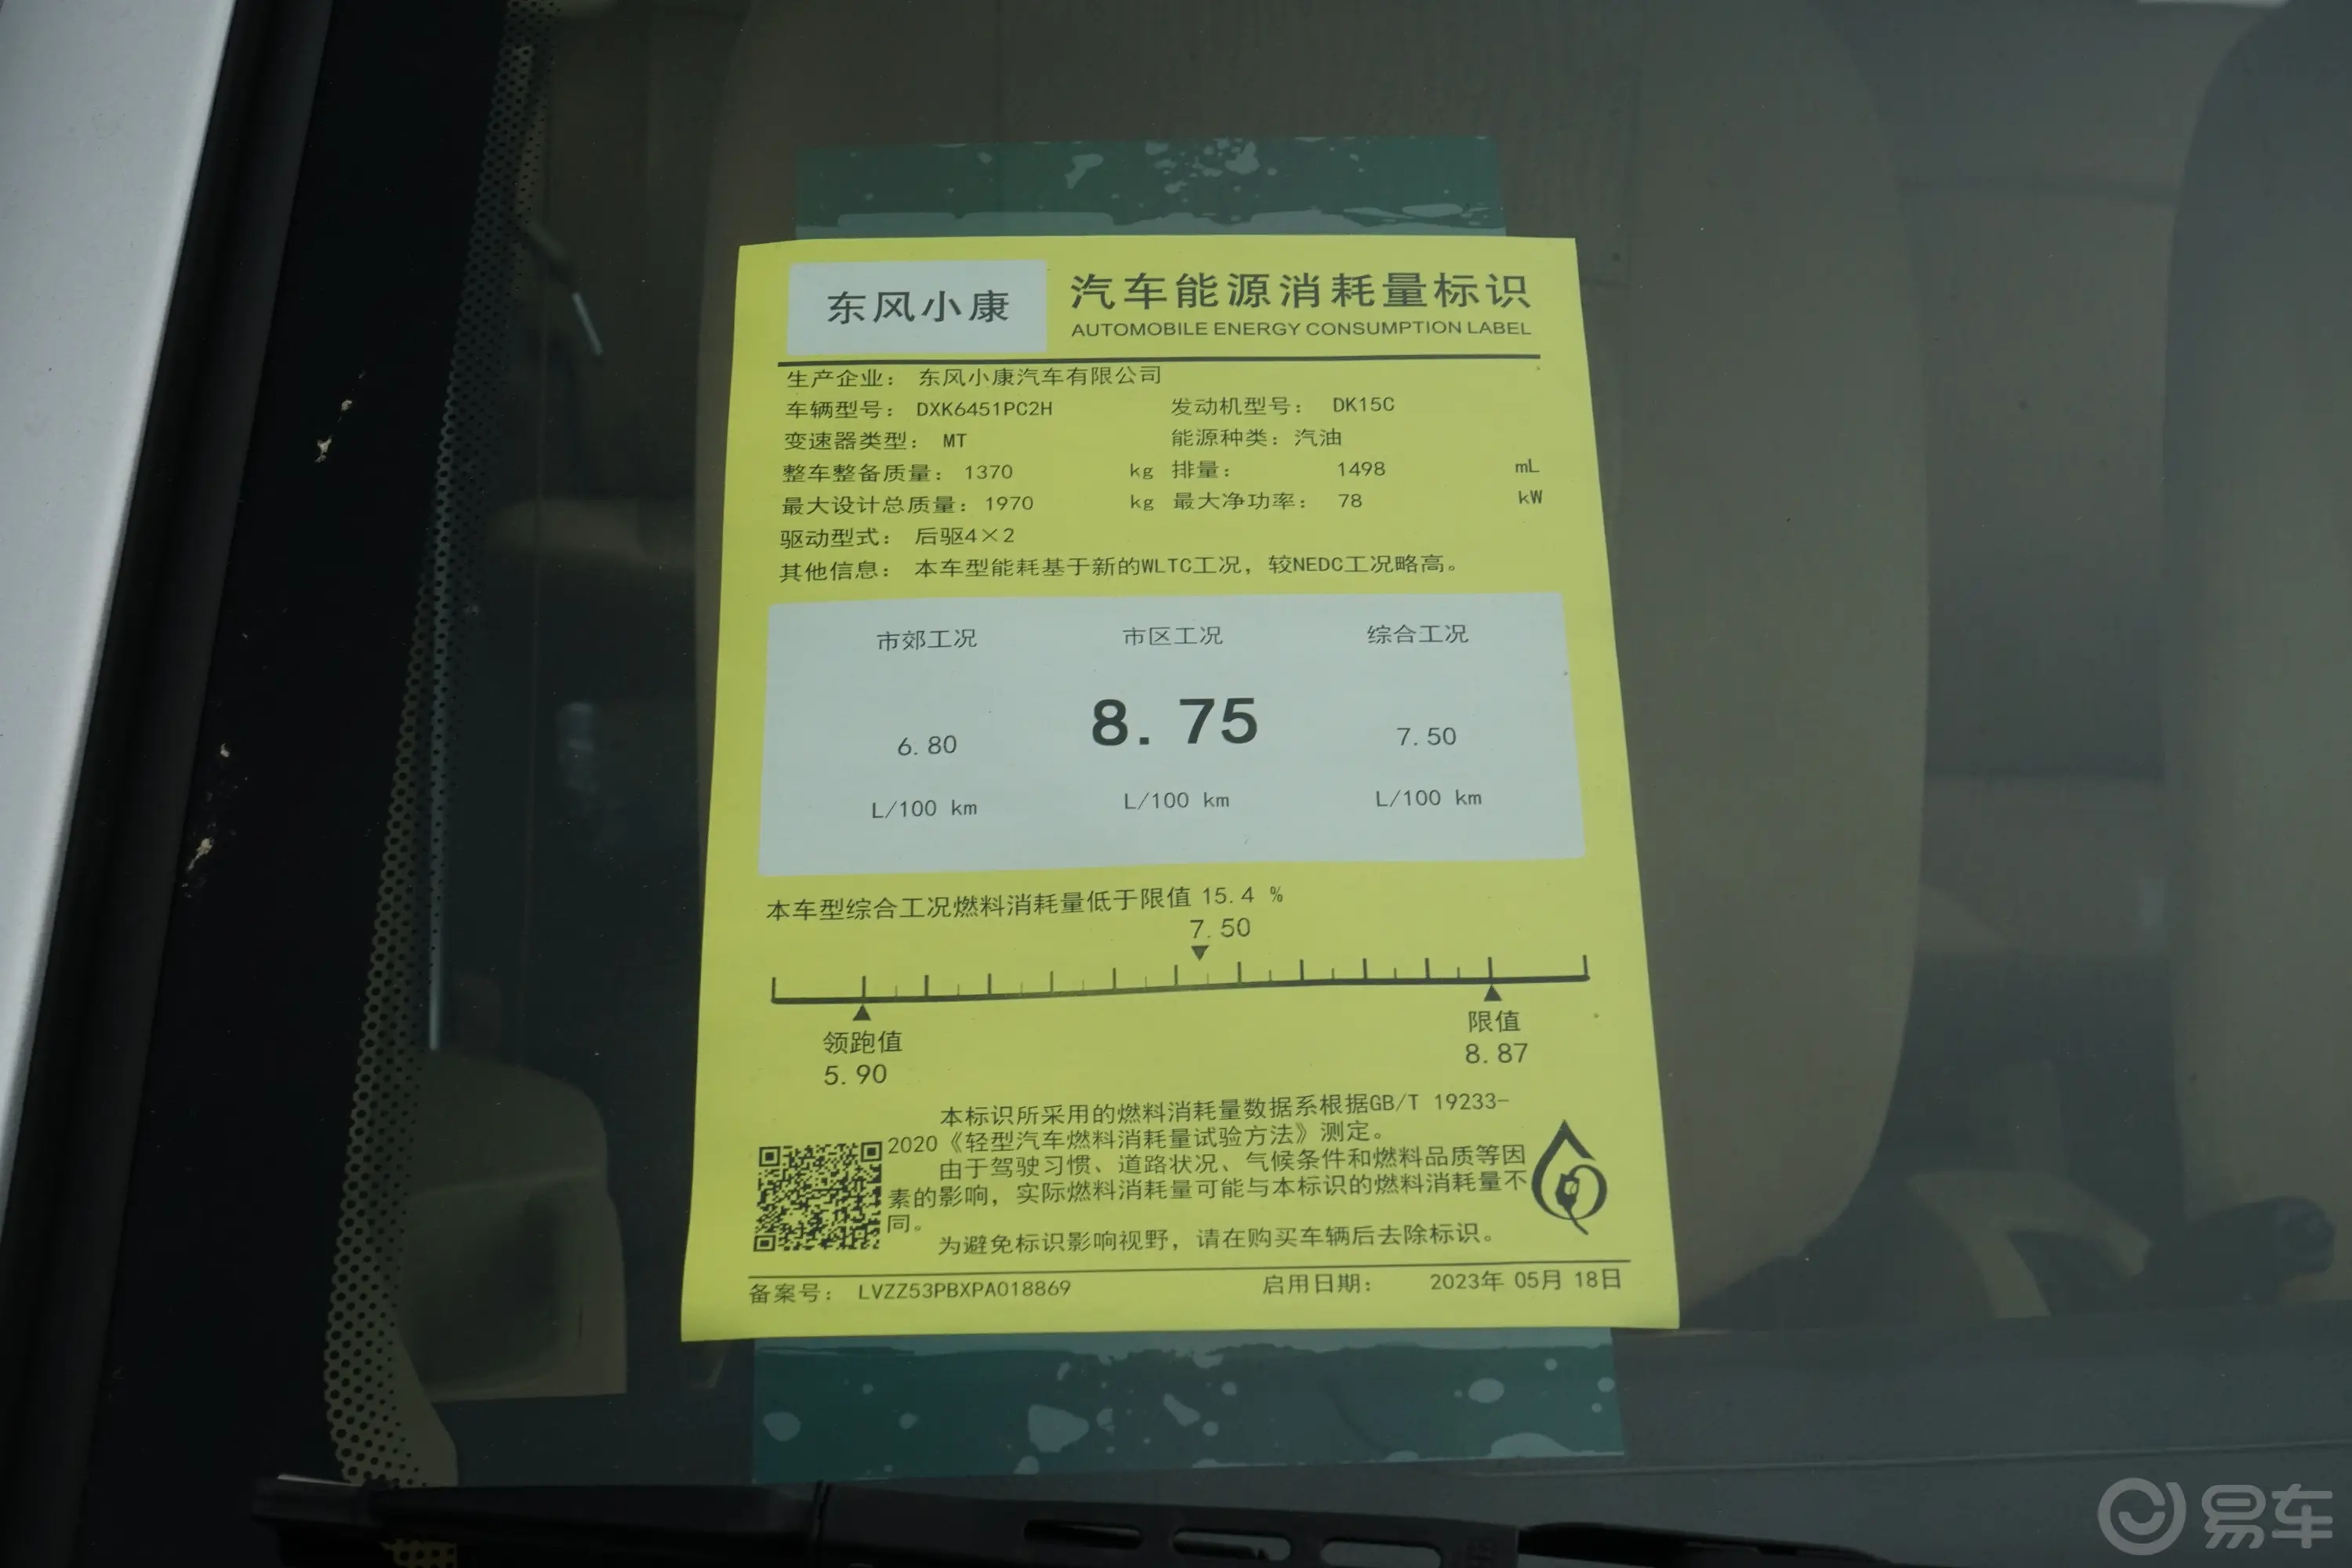 东风小康C361.5L 手动基本型环保标识